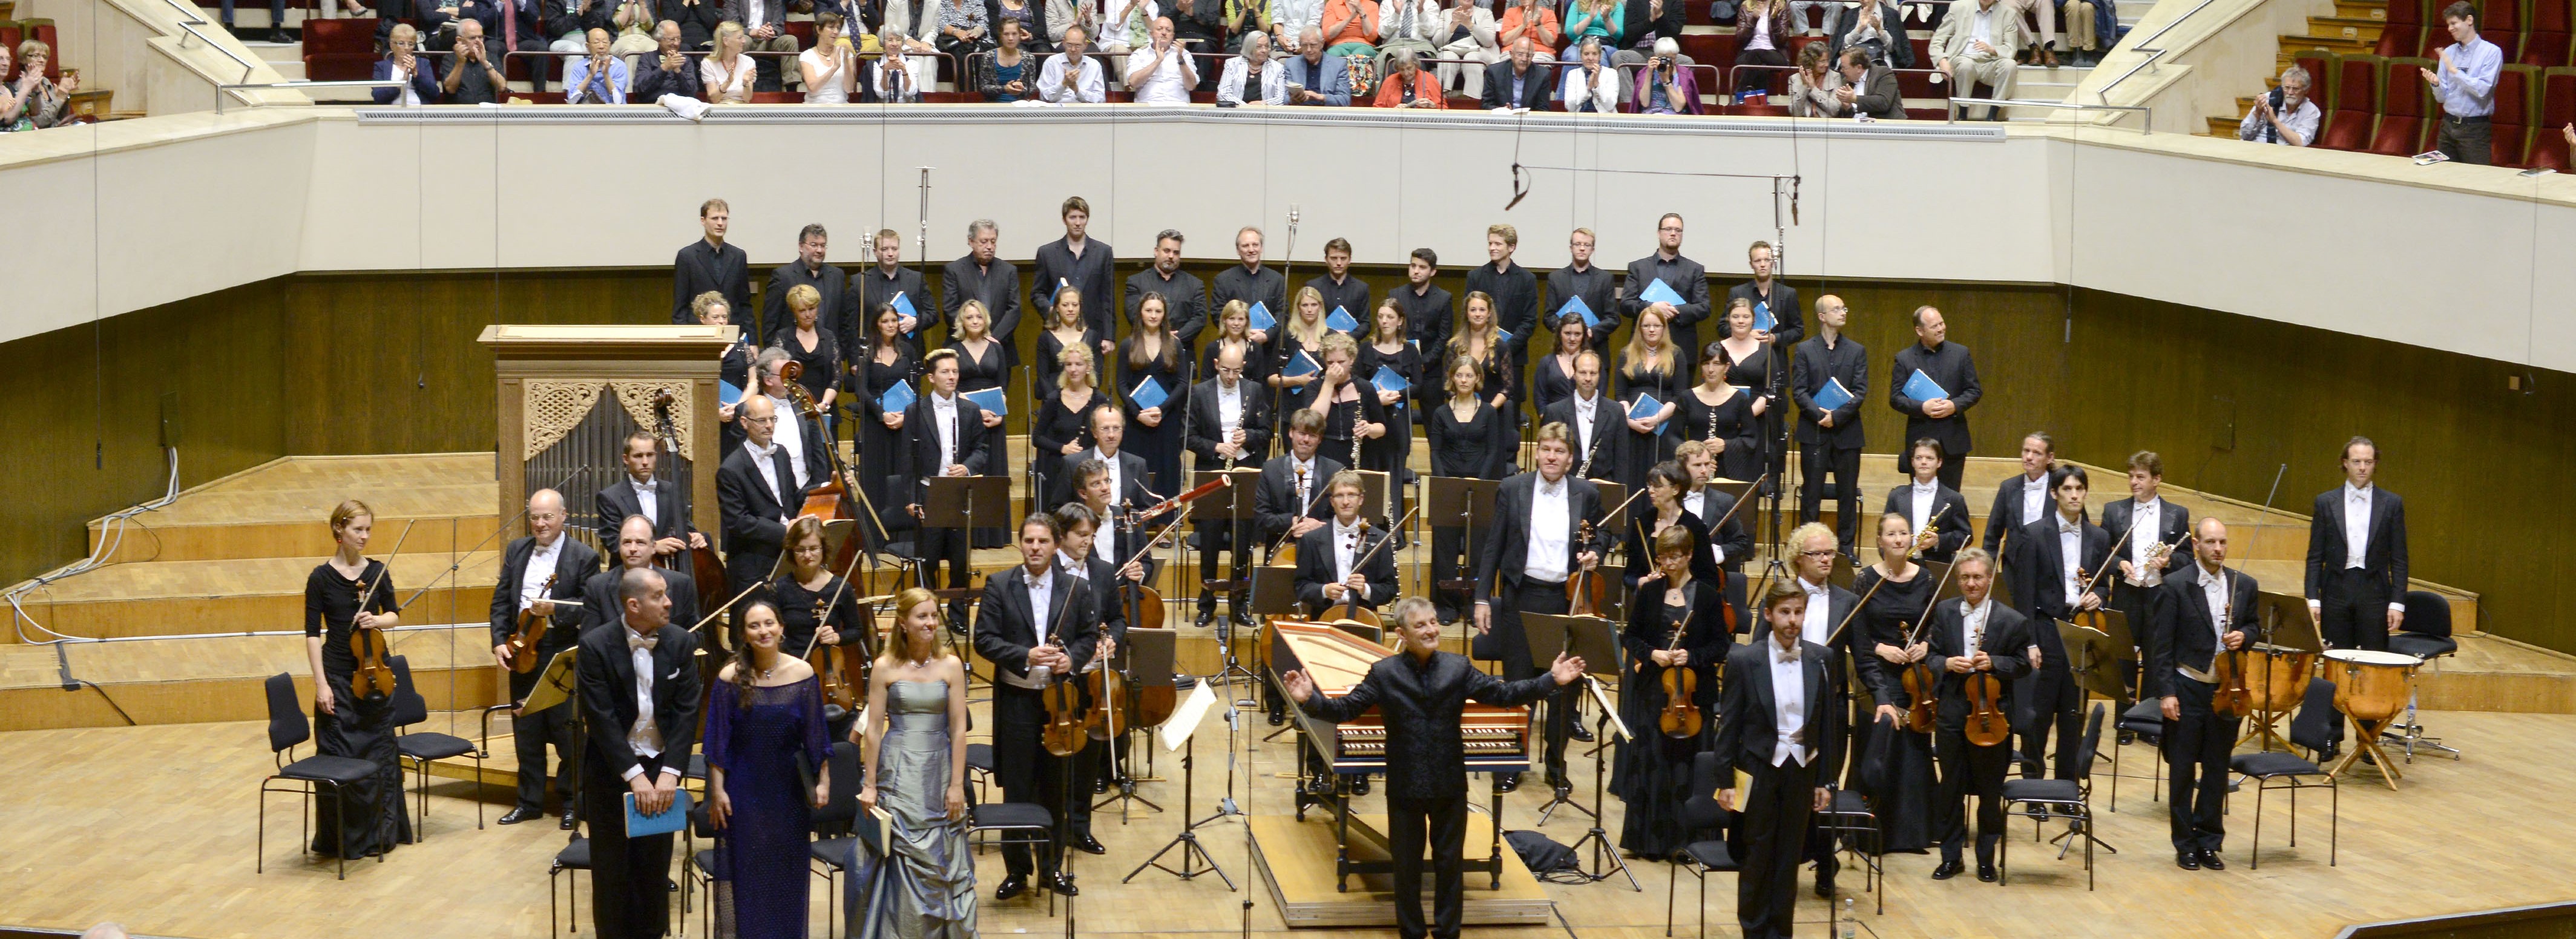 Bach Festival i Leipzig (Udsolgt), Med hele seks koncerter inkluderet og fuldt program